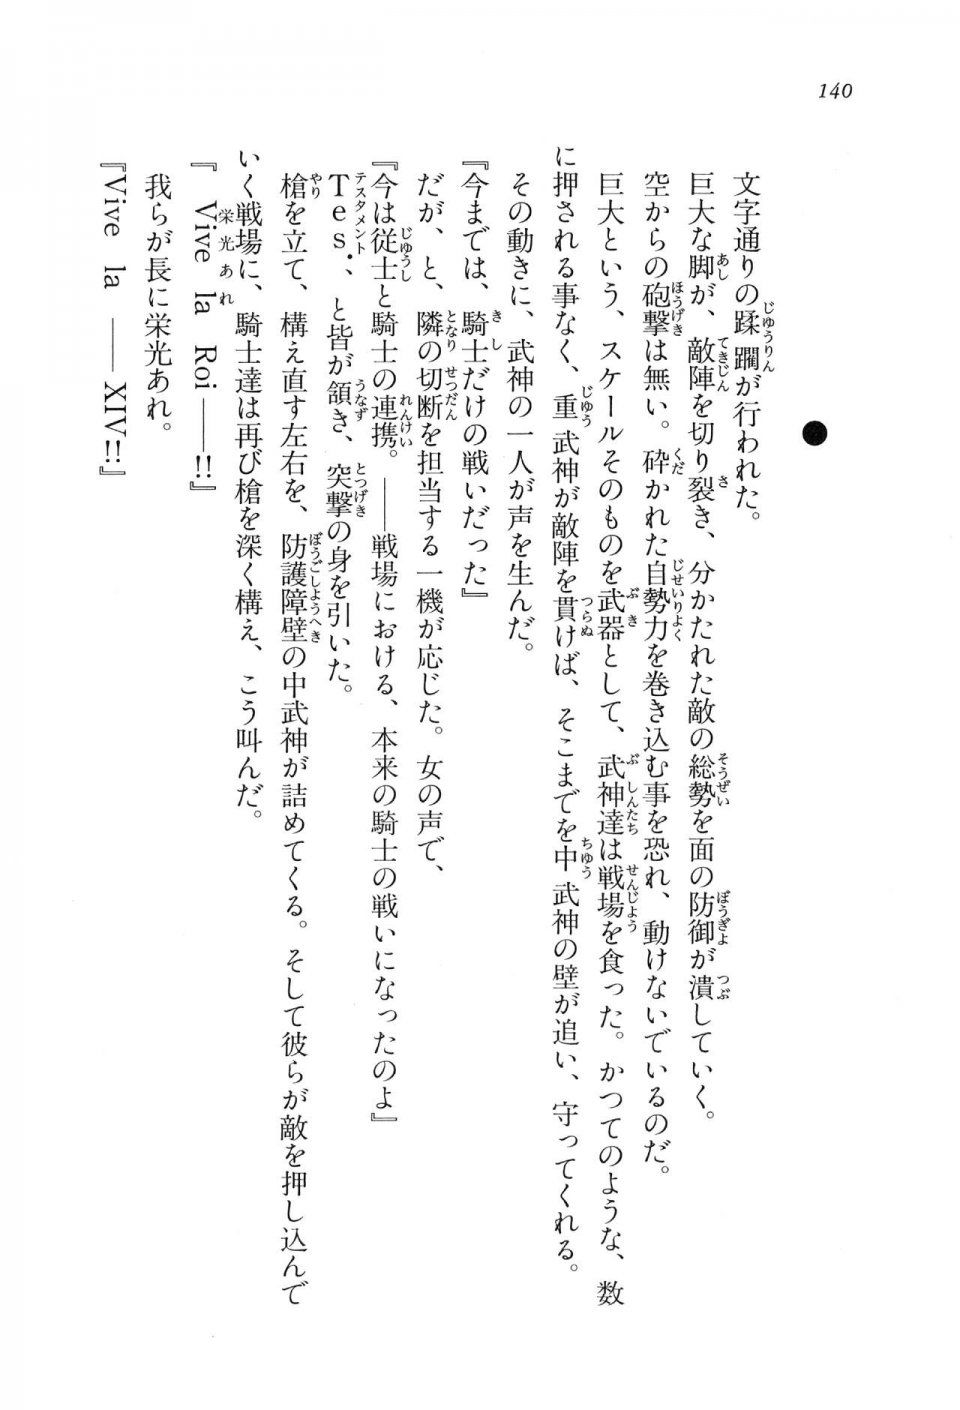 Kyoukai Senjou no Horizon LN Vol 11(5A) - Photo #140